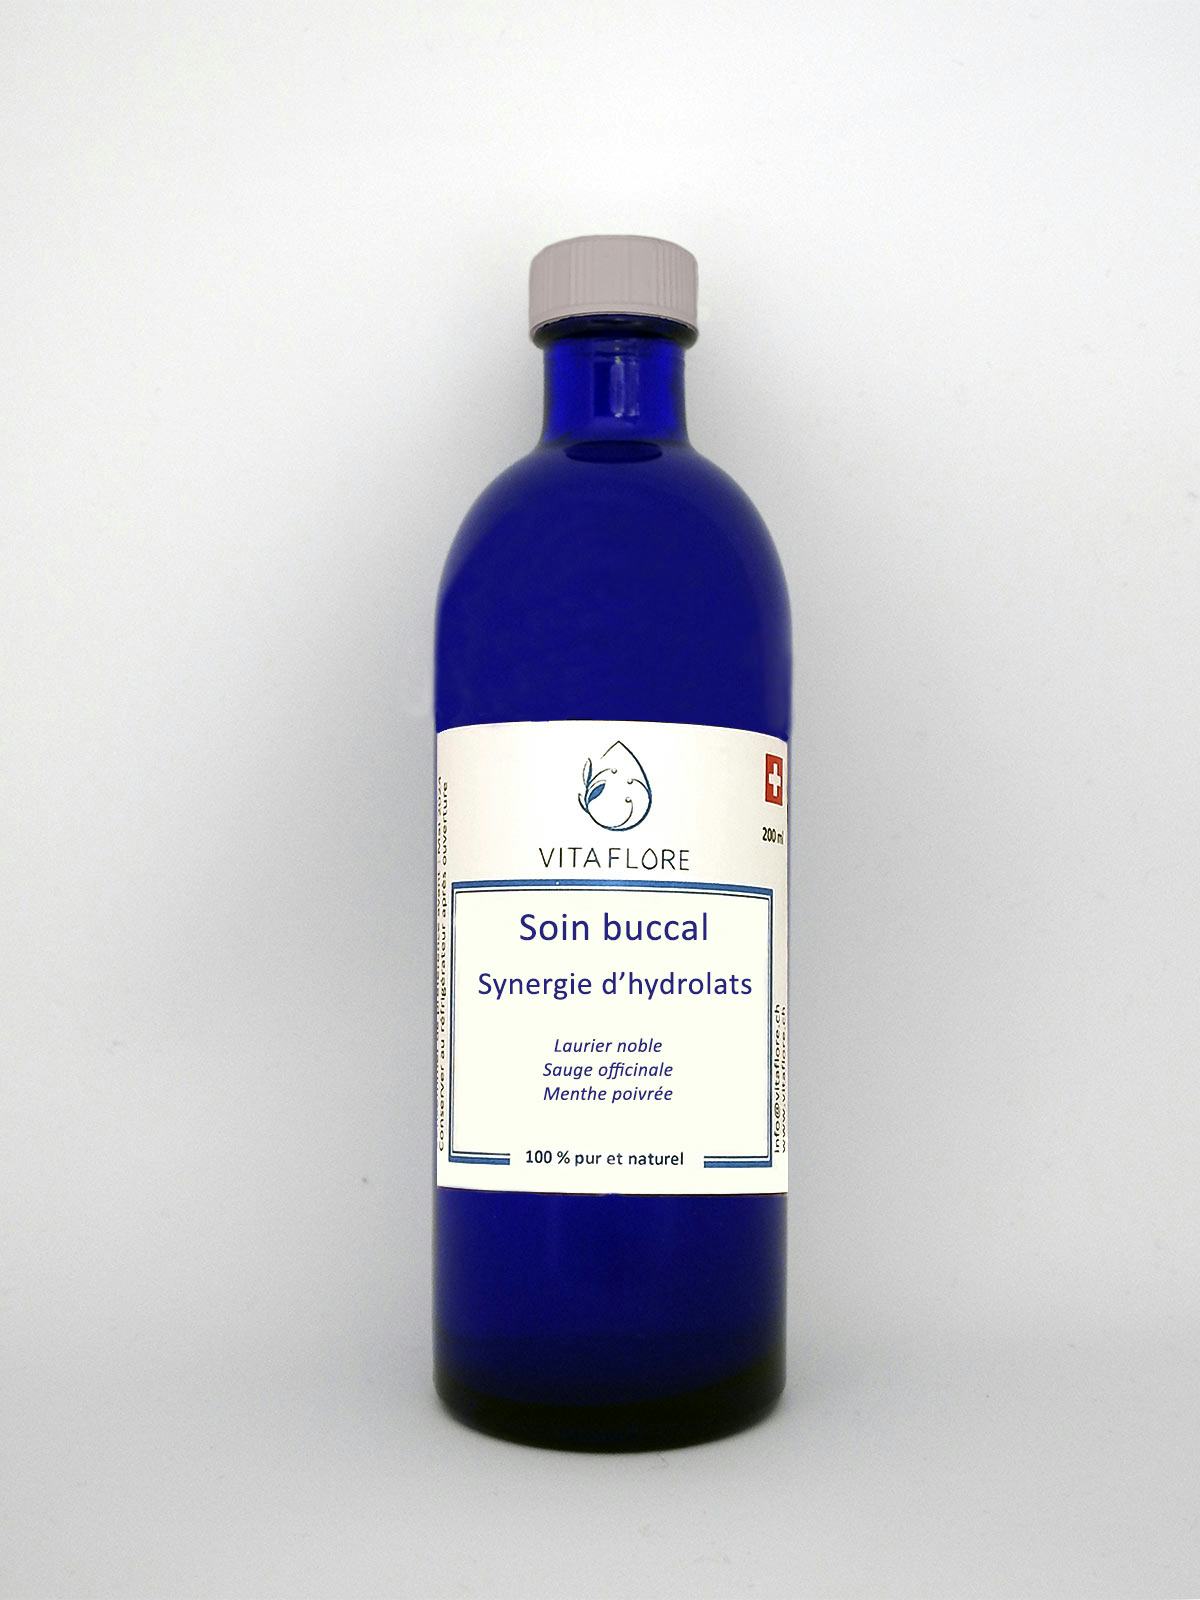 Synergie d’hydrolats – Soin buccal, produit artisanal en vente directe en Suisse